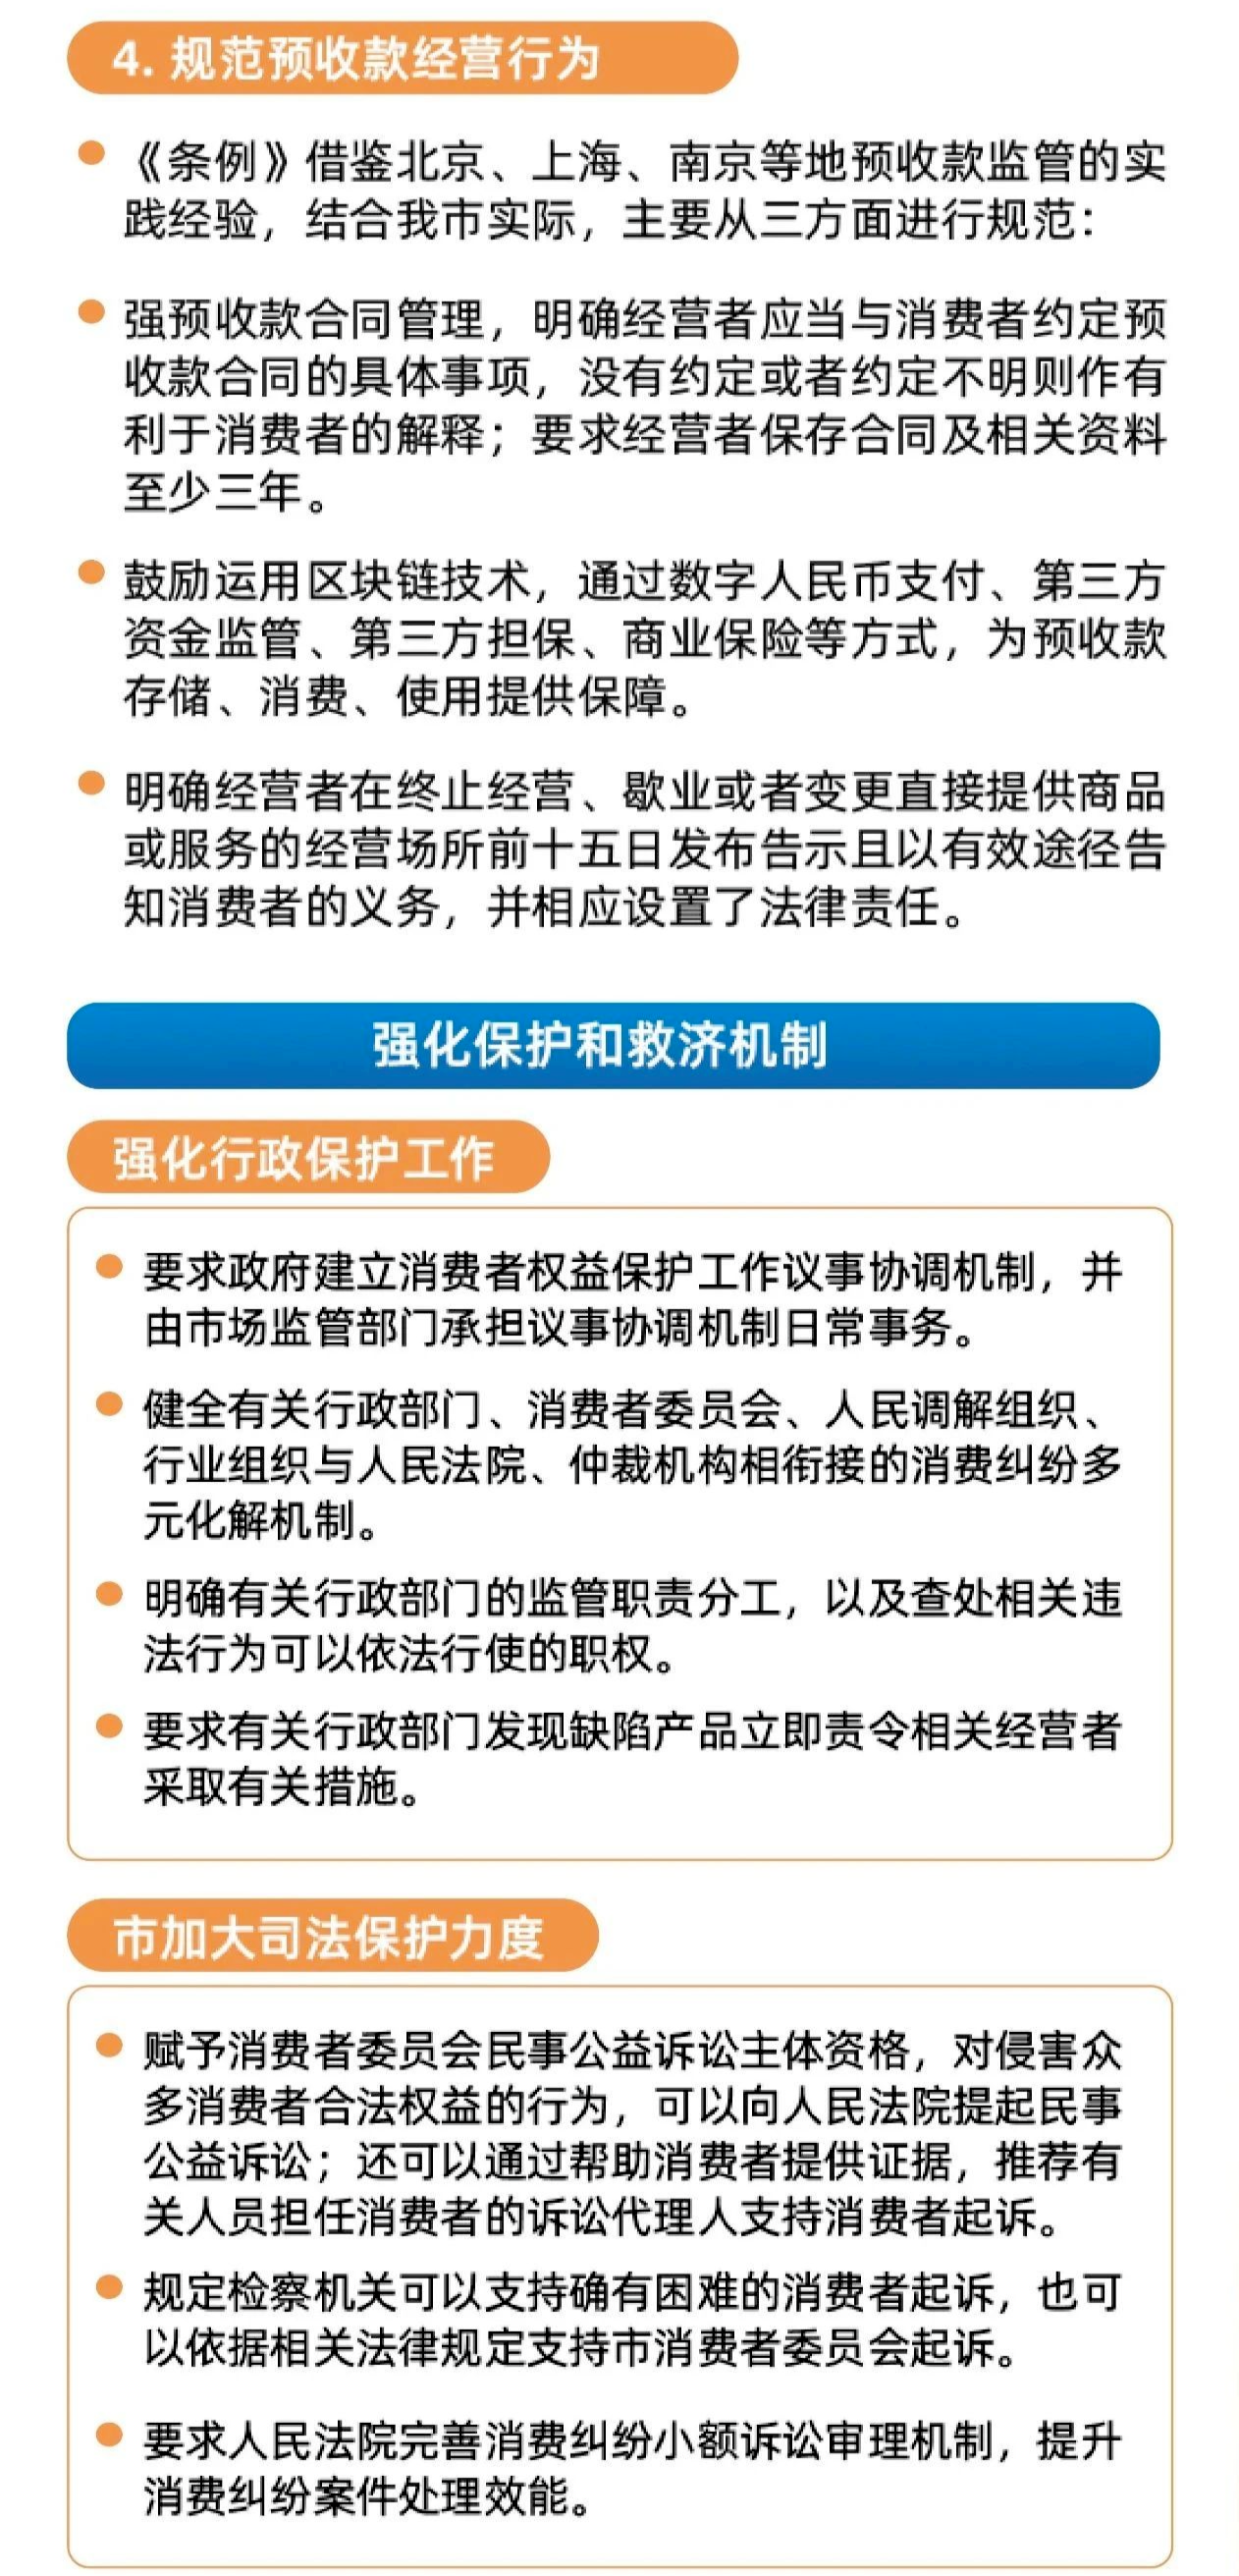 一图读懂|深圳经济特区消费者权益保护条例